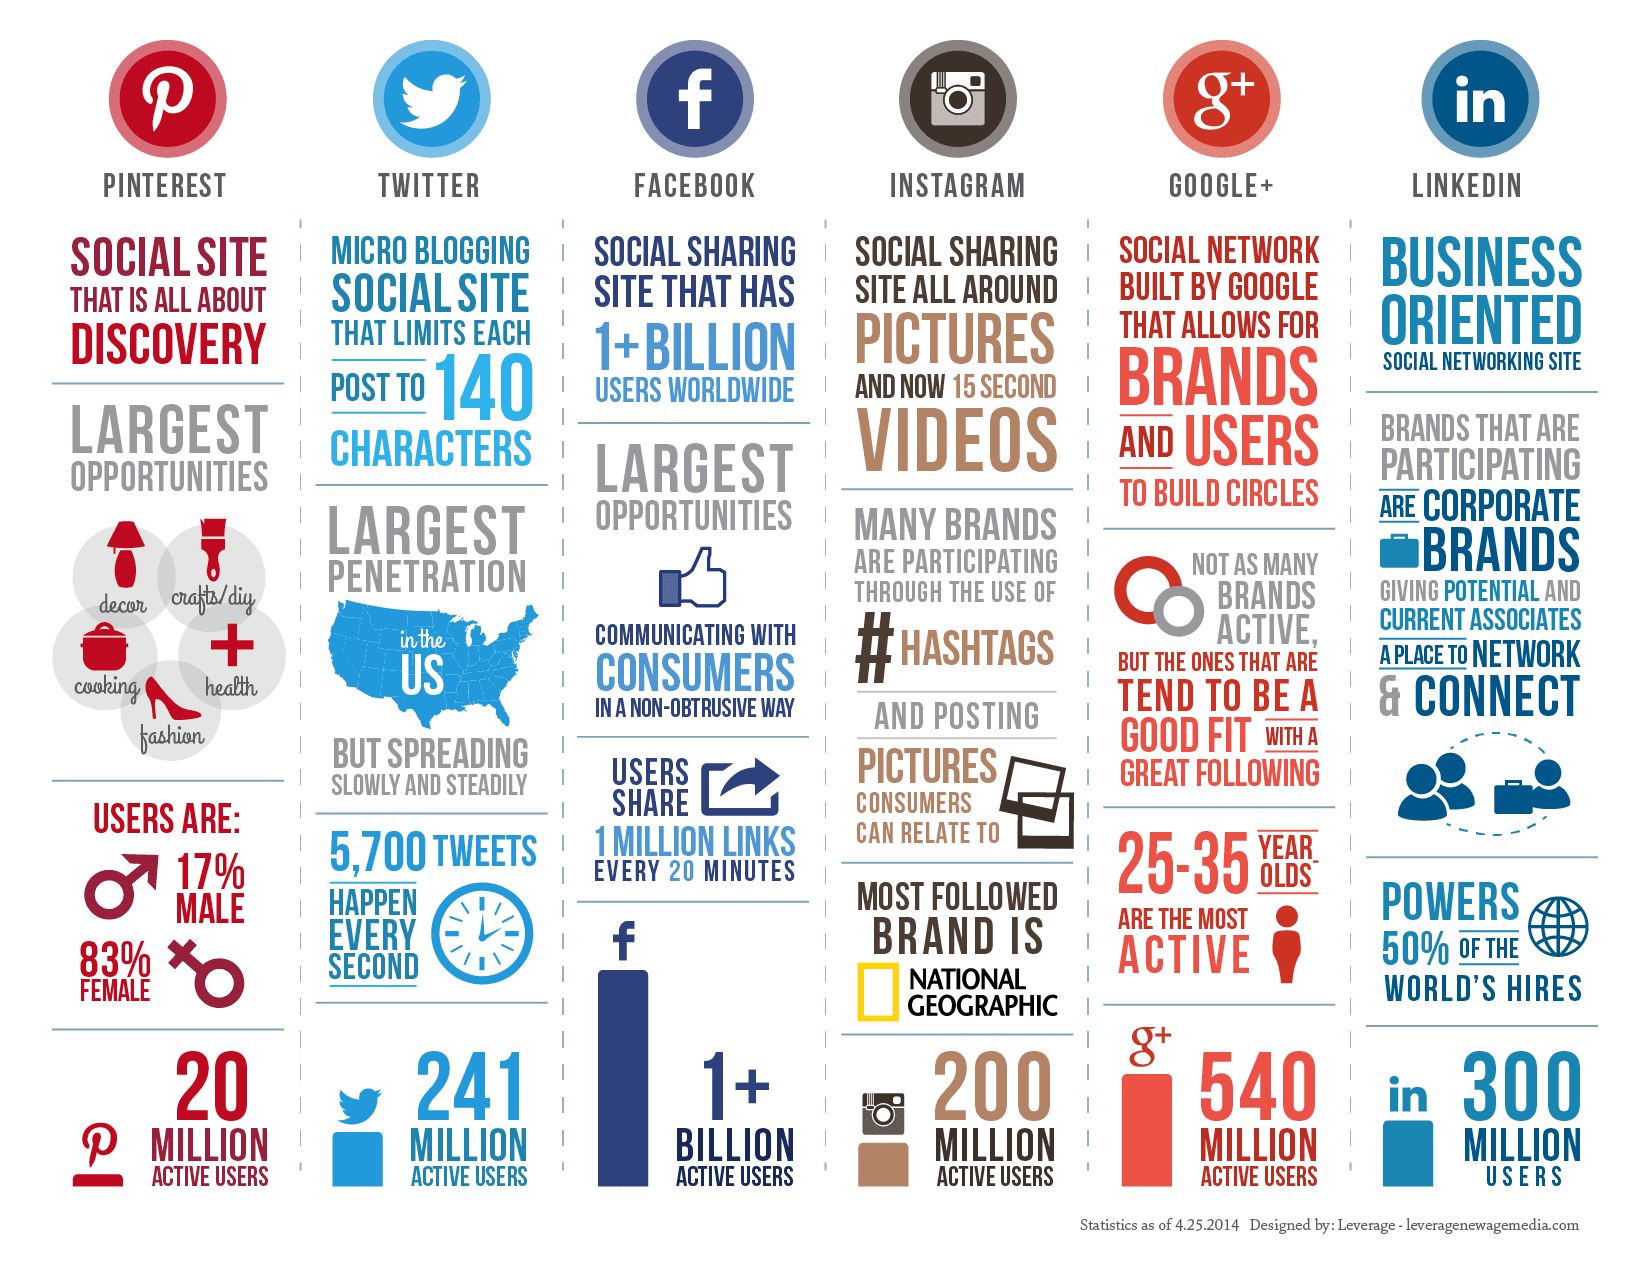 Social Media Marketing Facts